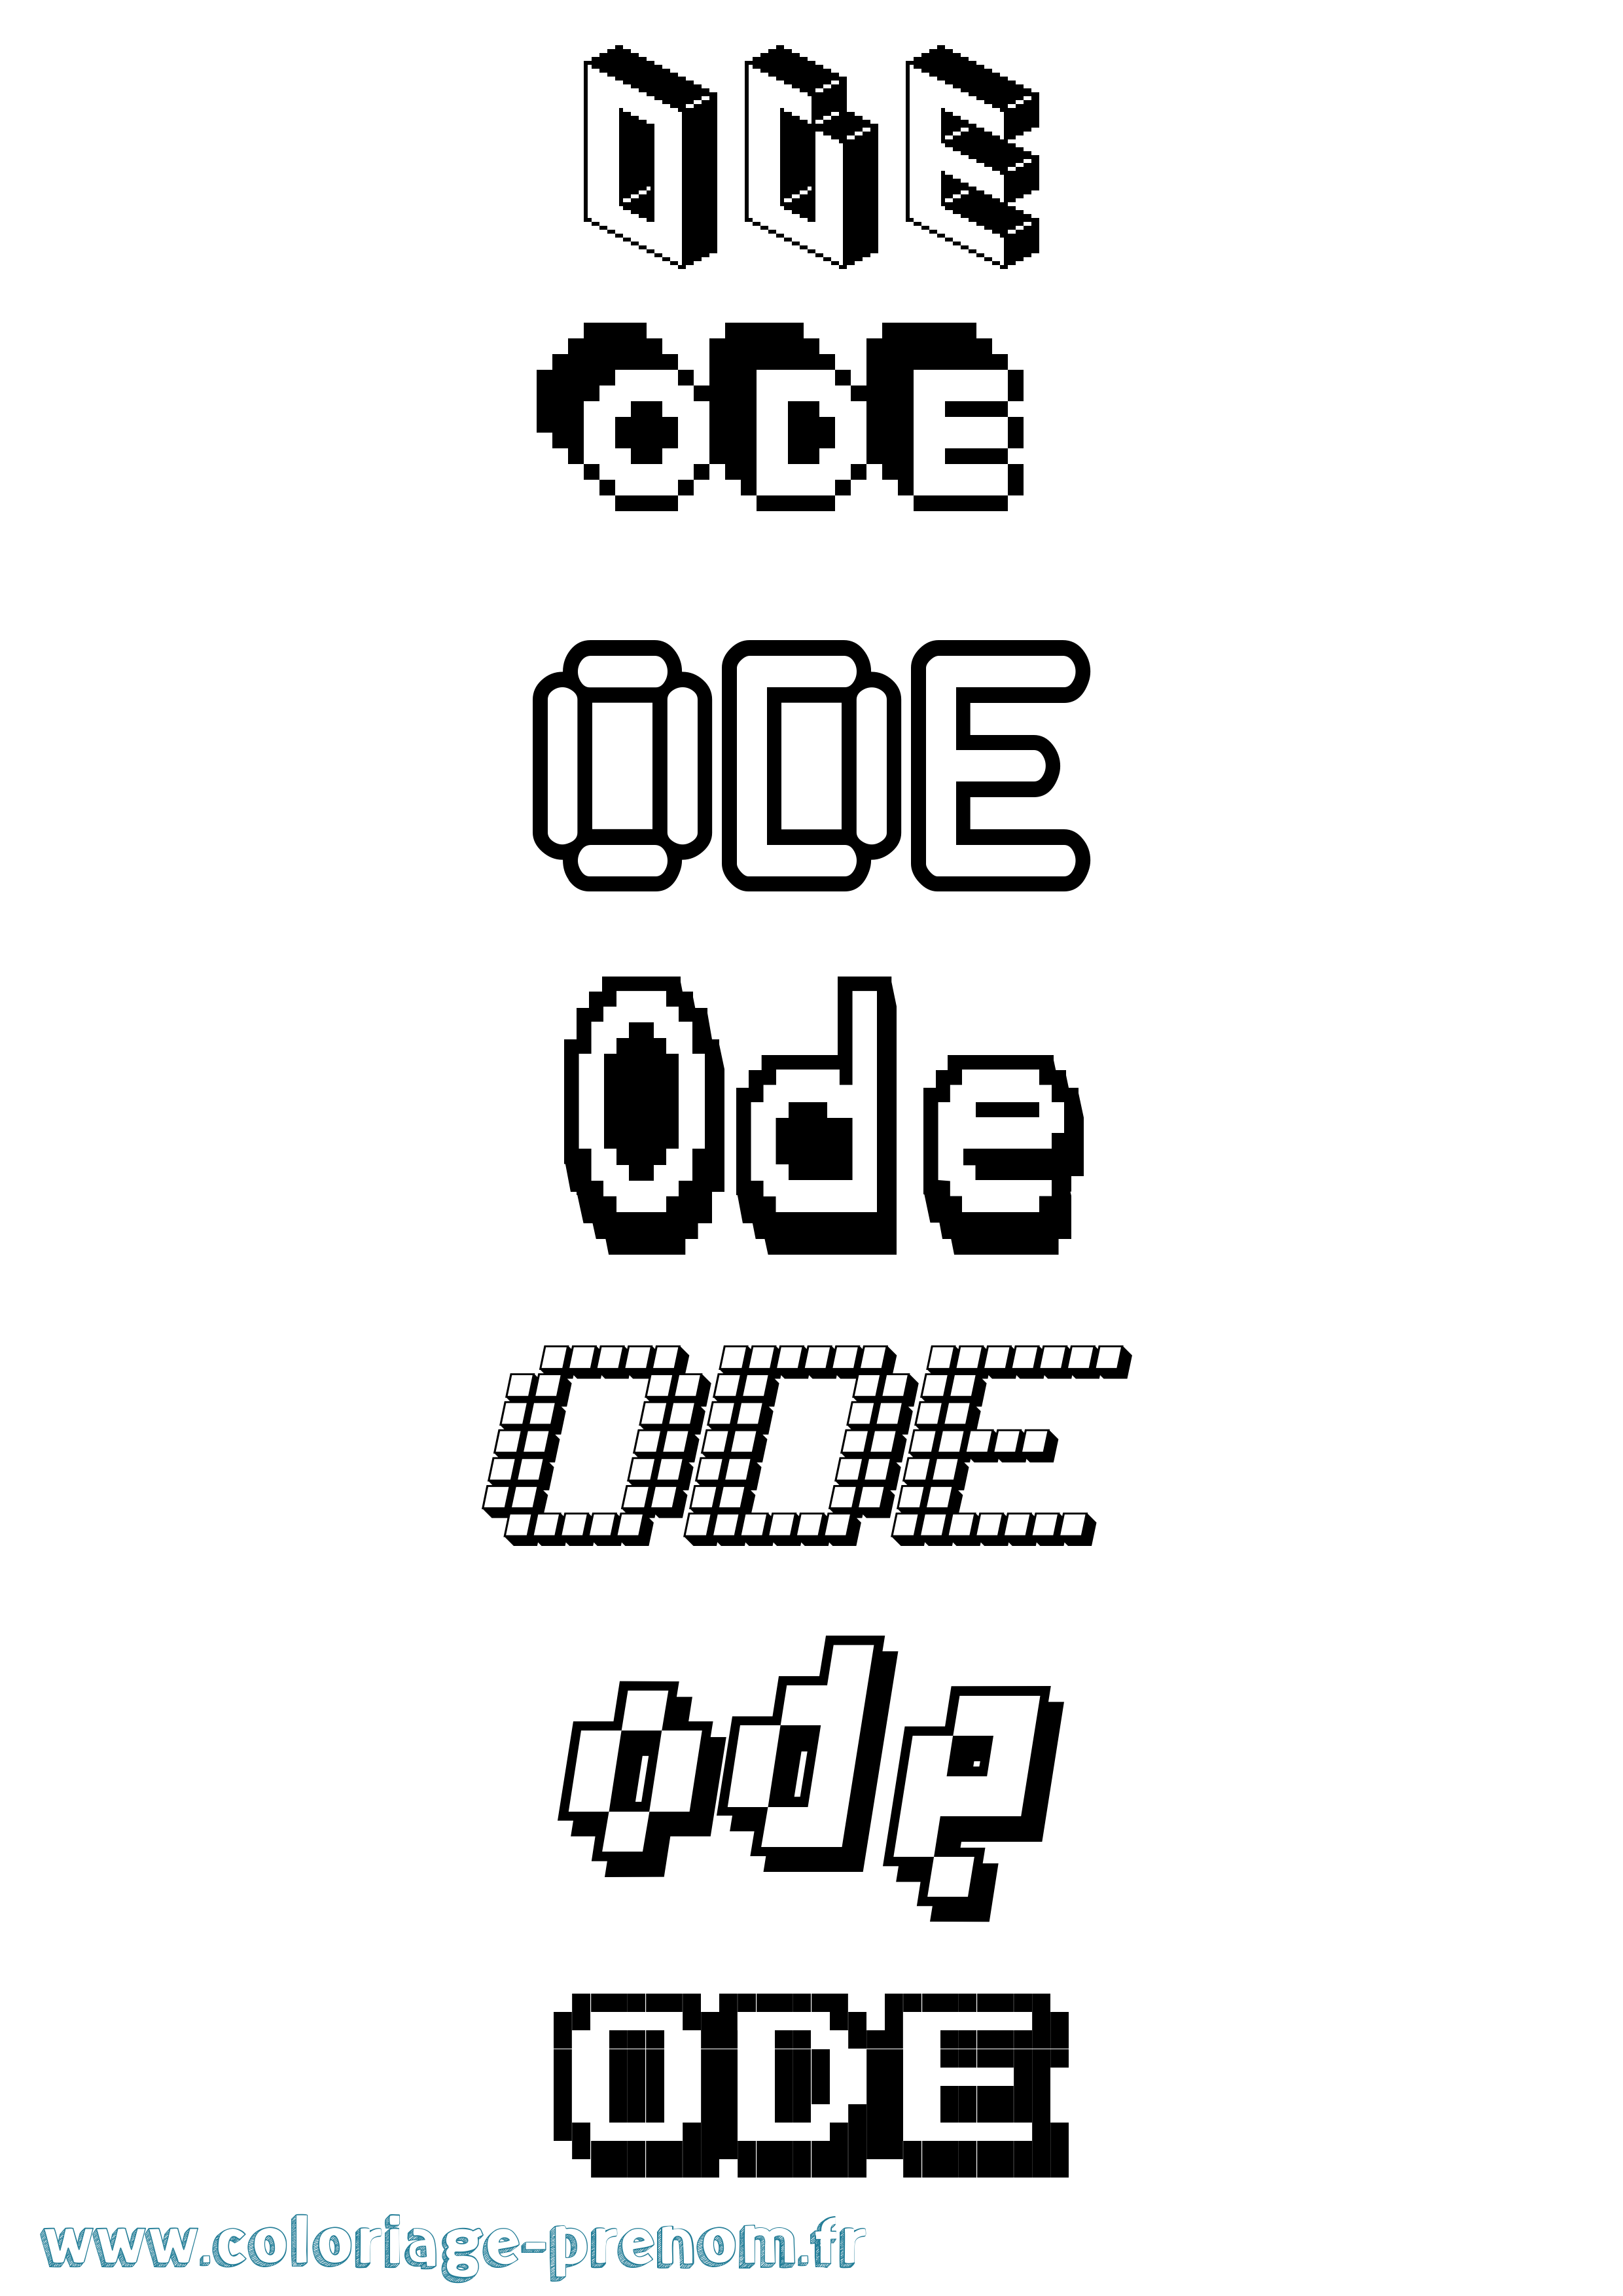 Coloriage prénom Ode Pixel